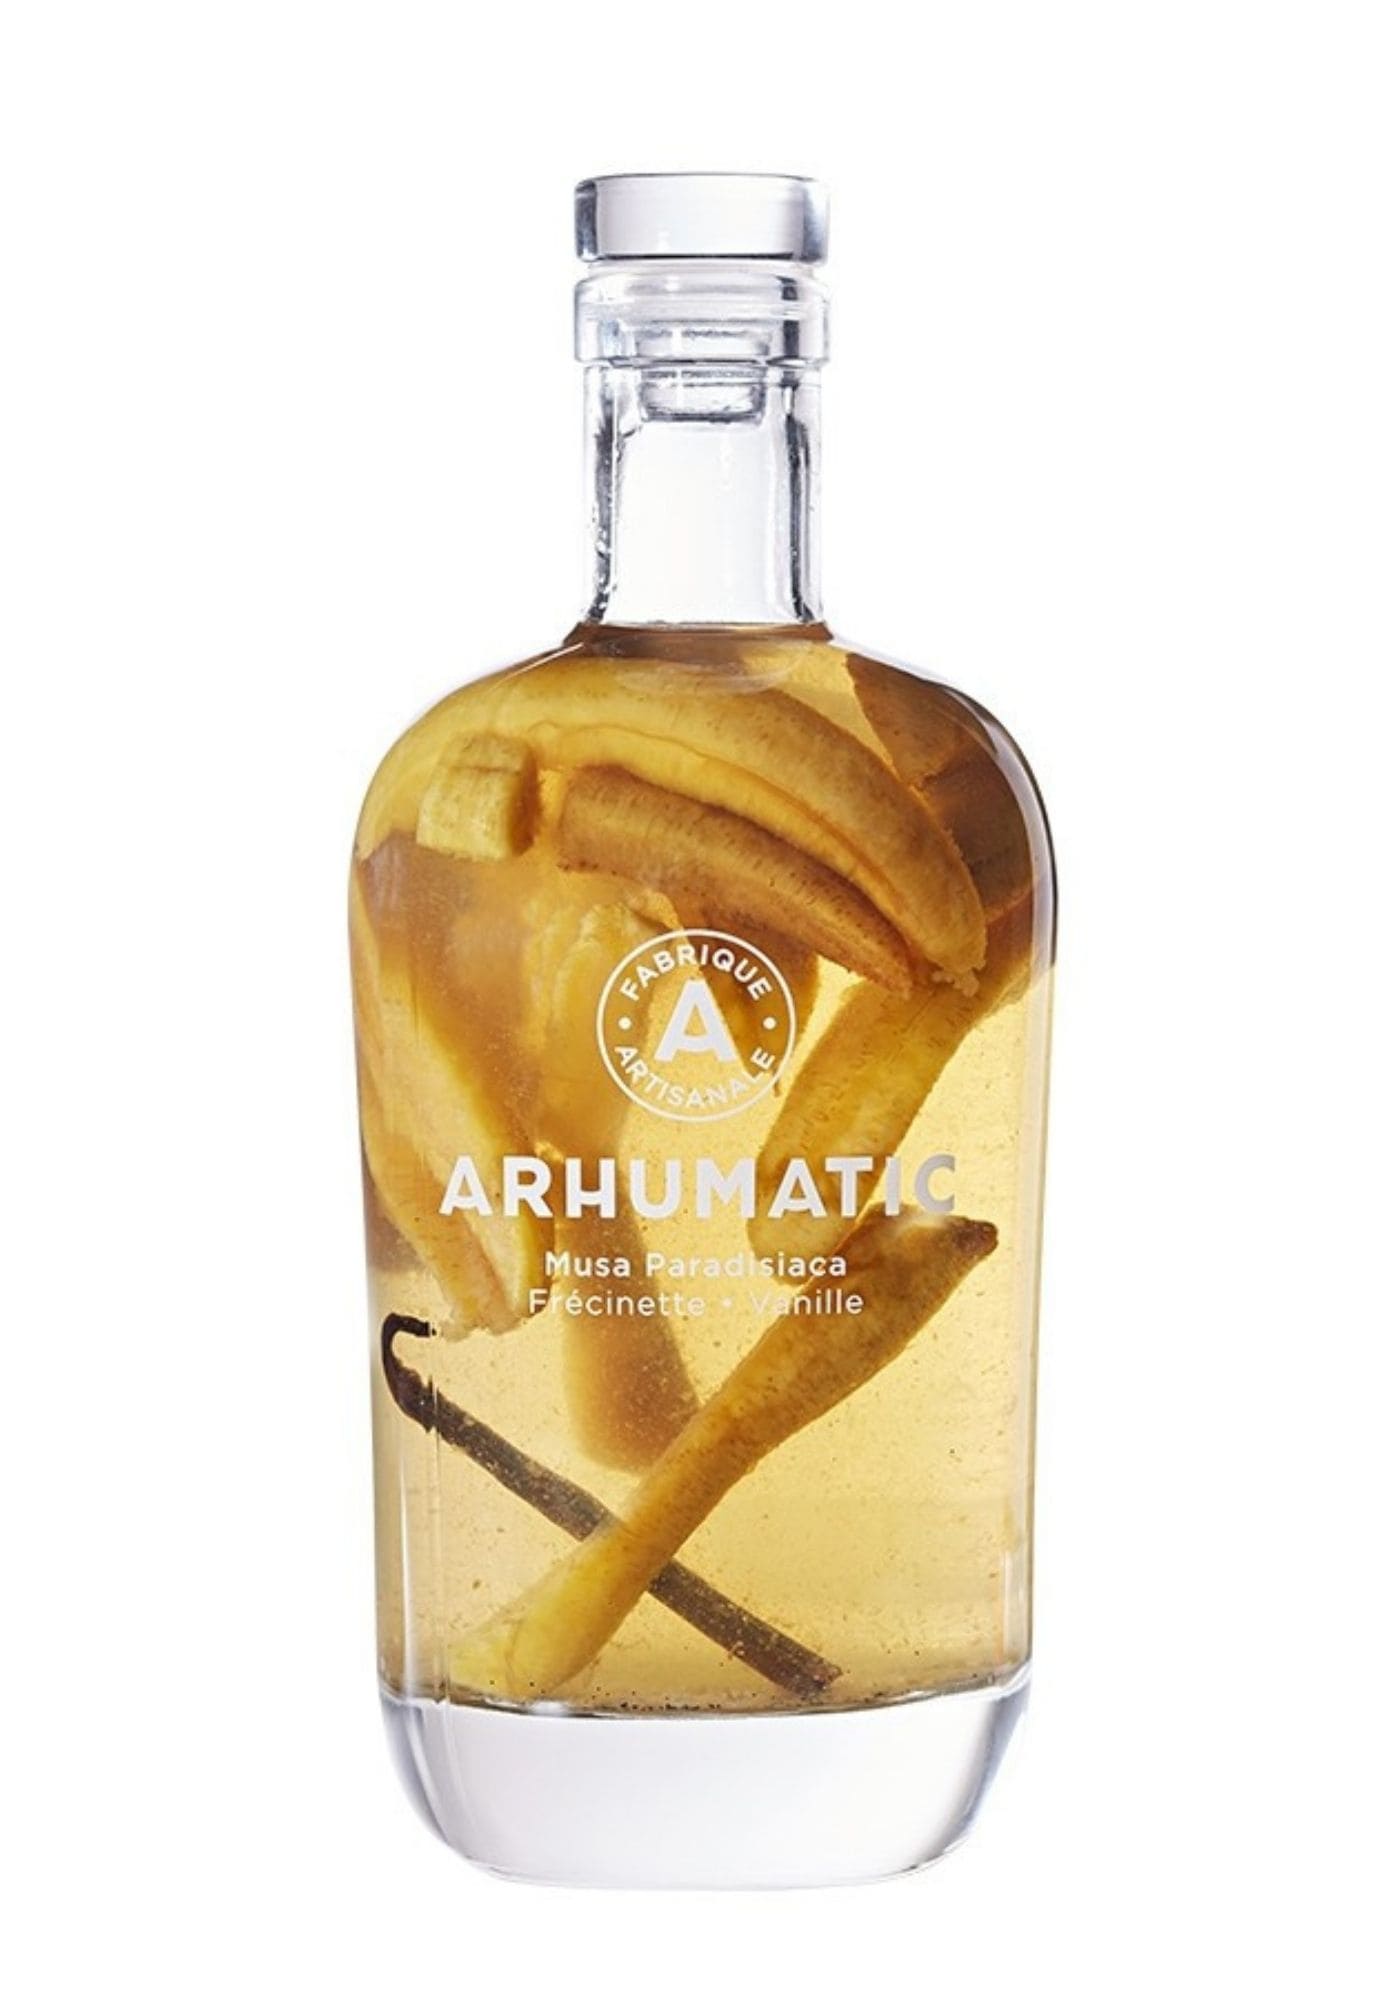 arhumatic-rhum-arrange-frecinette-vanille-alcool-de-guadeloupe